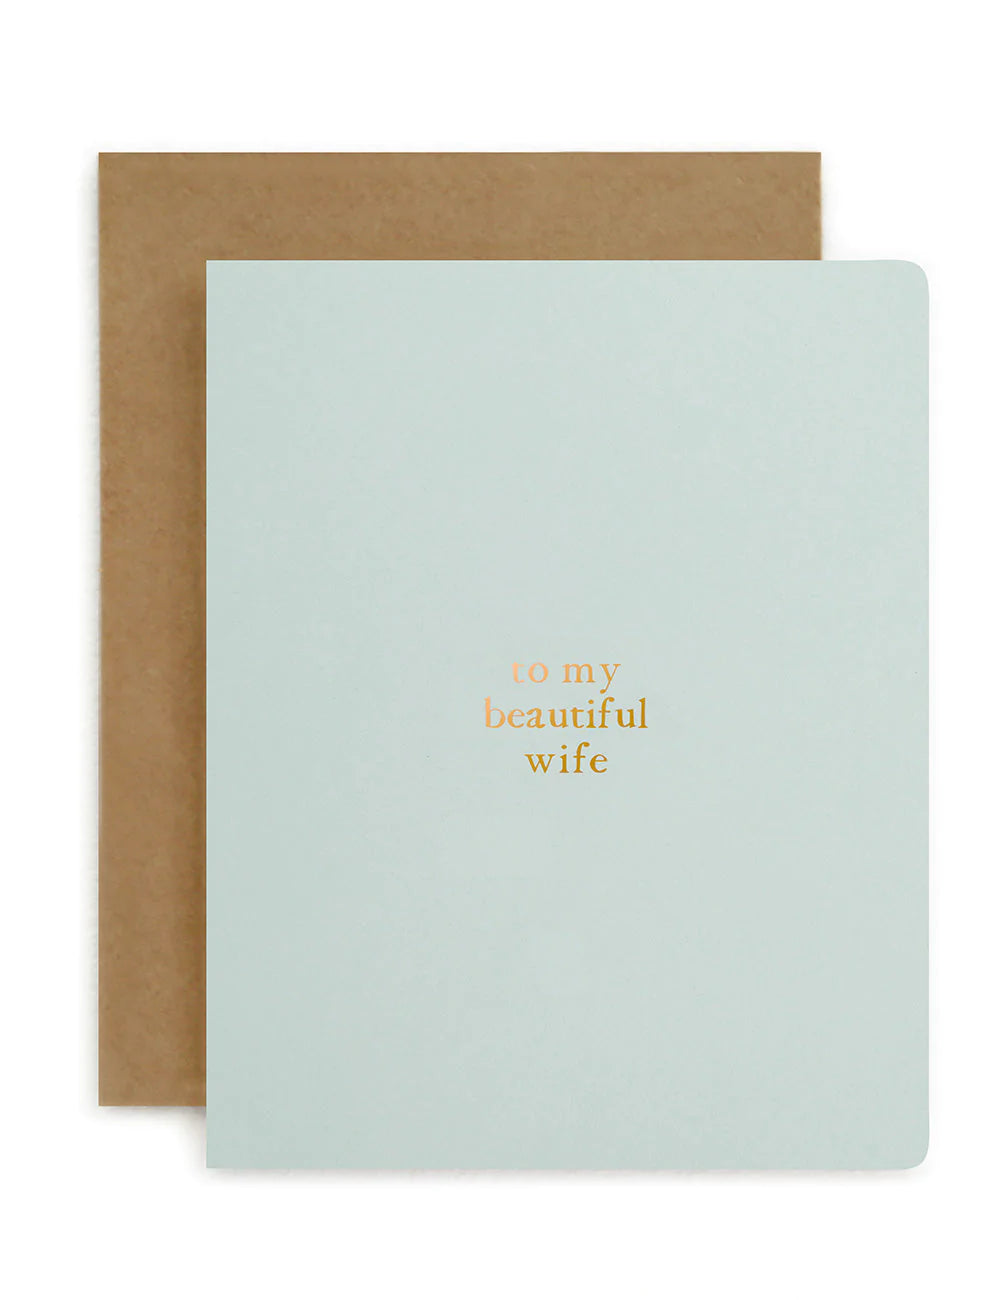 To my Beautiful Wife Card